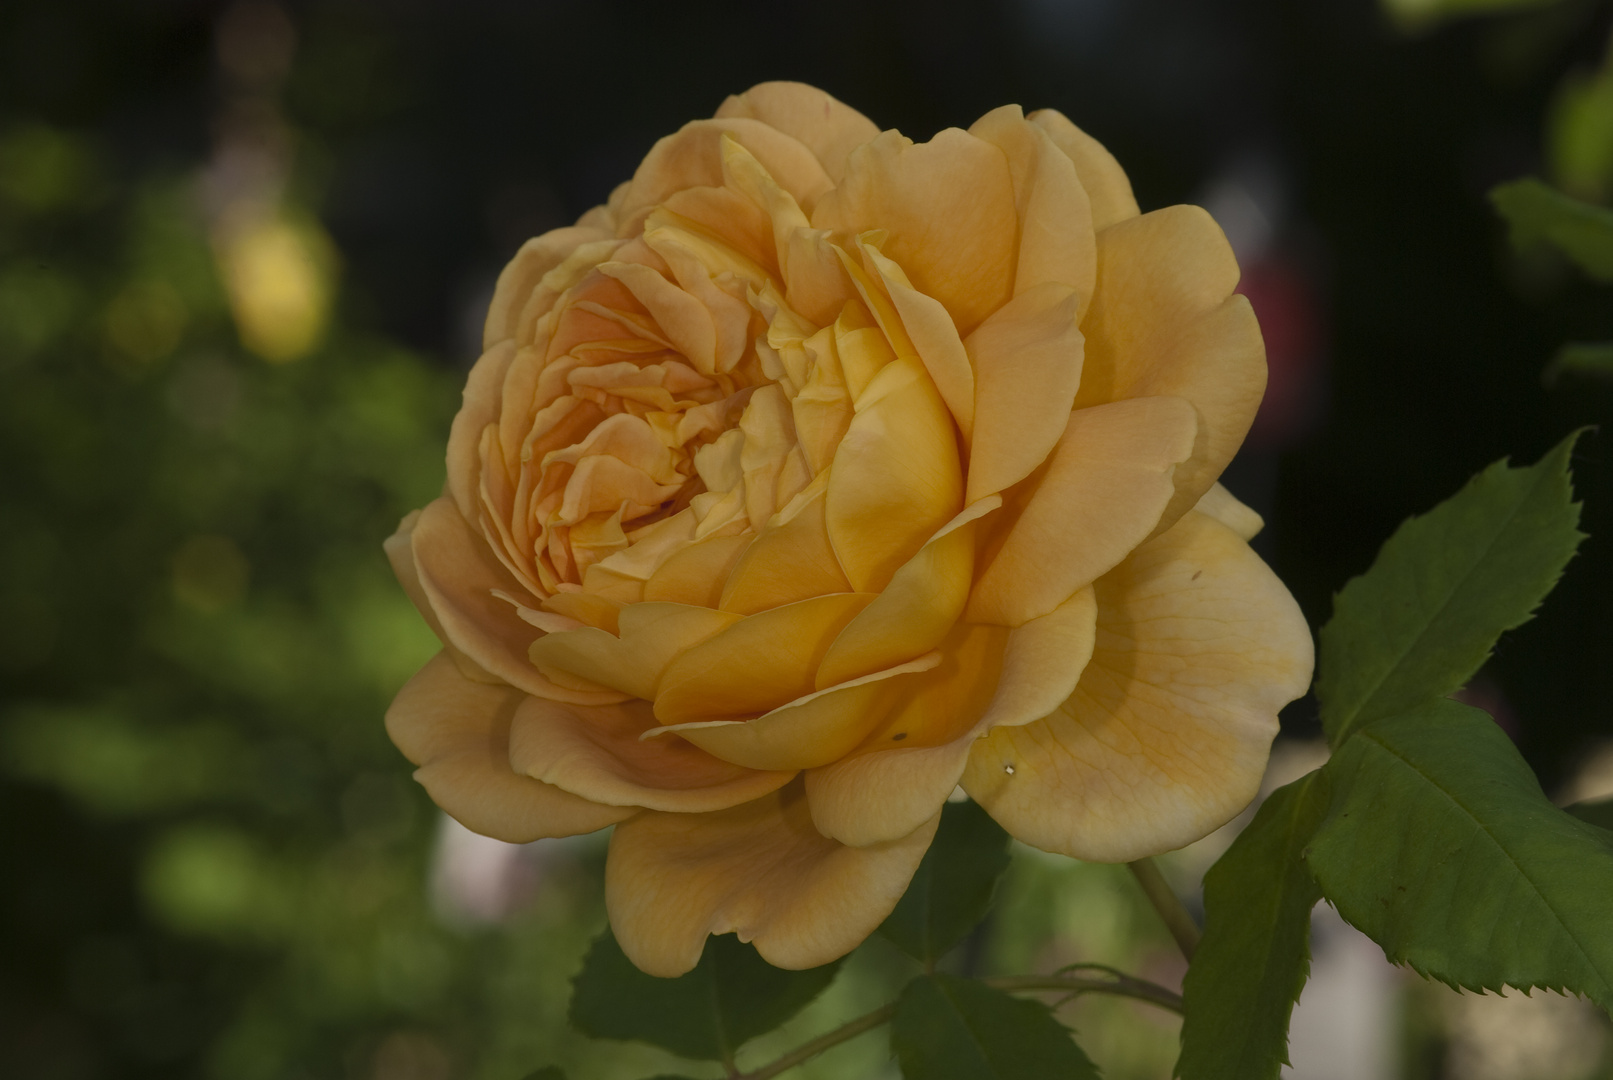 Rose "Golden Celebration"